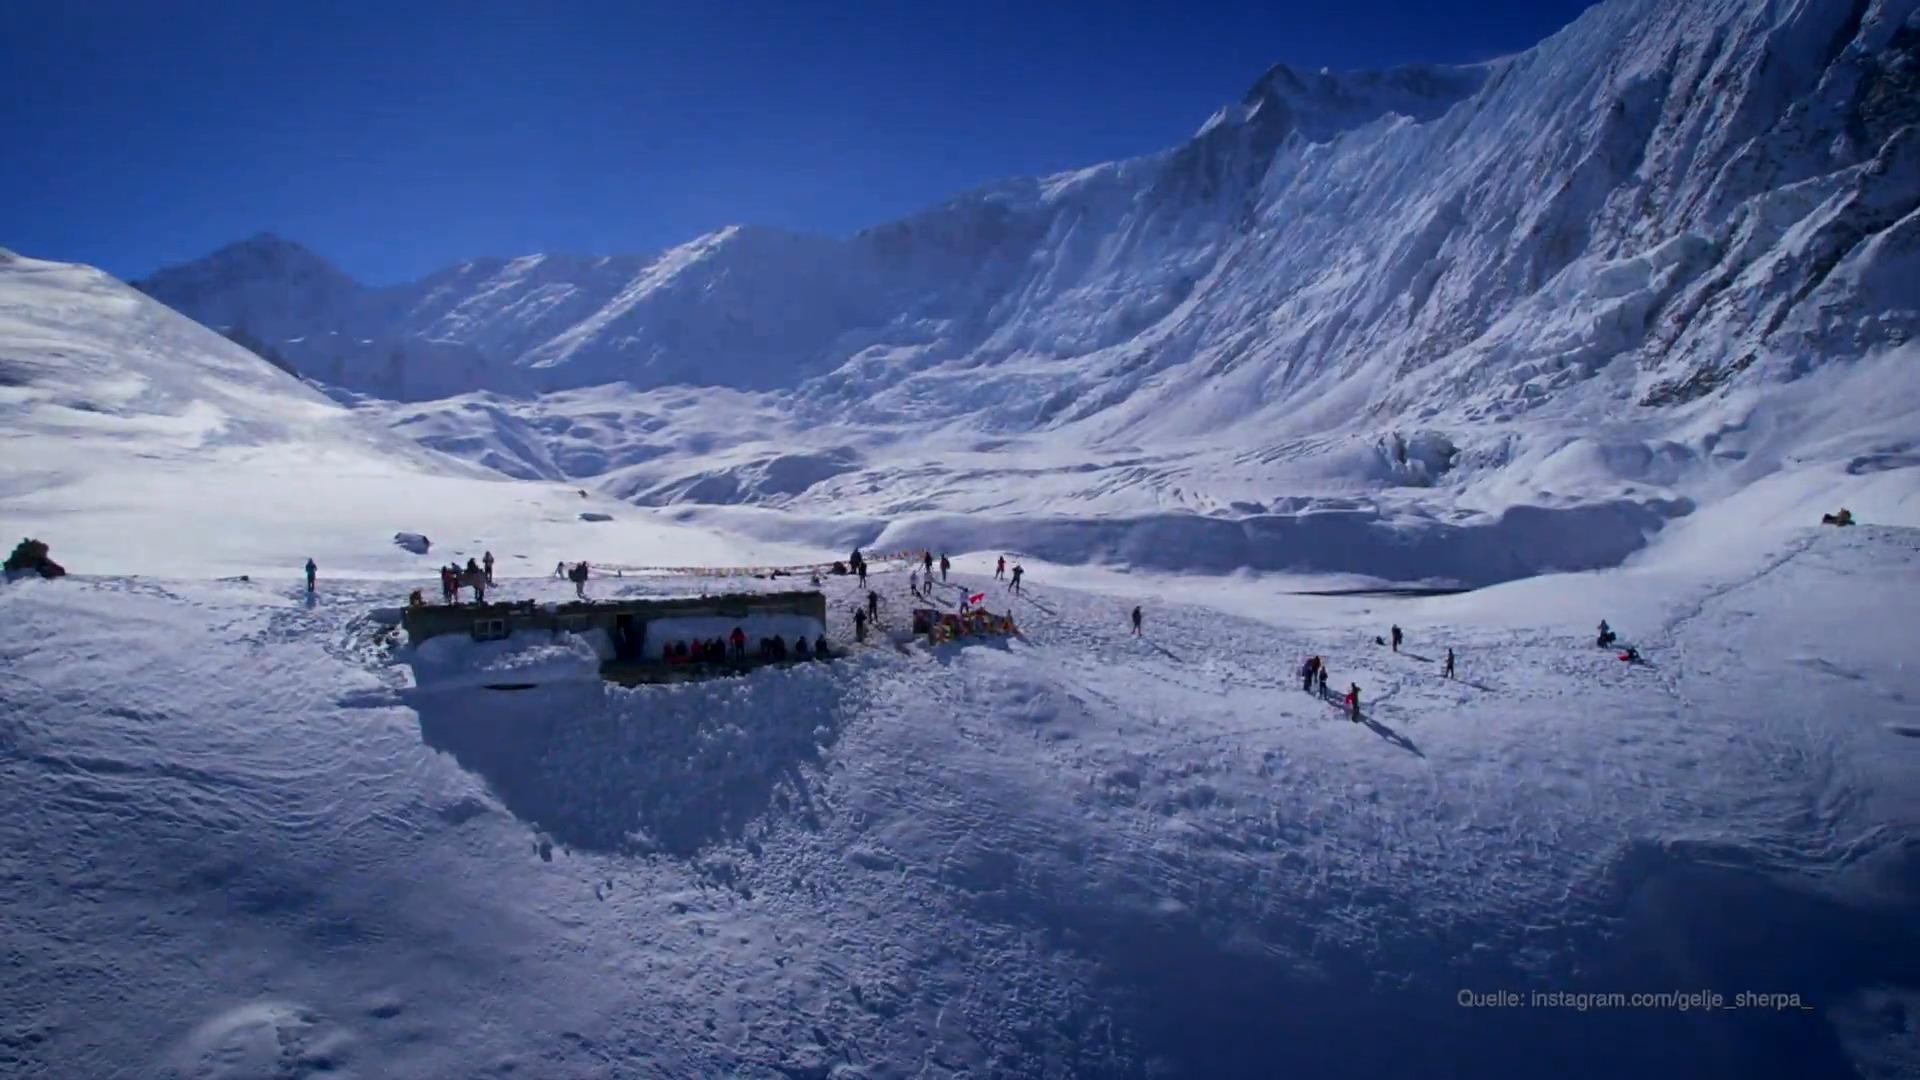 Todesfälle am Gipfel des Mount Everest häufen sich Menschliche Abgründe